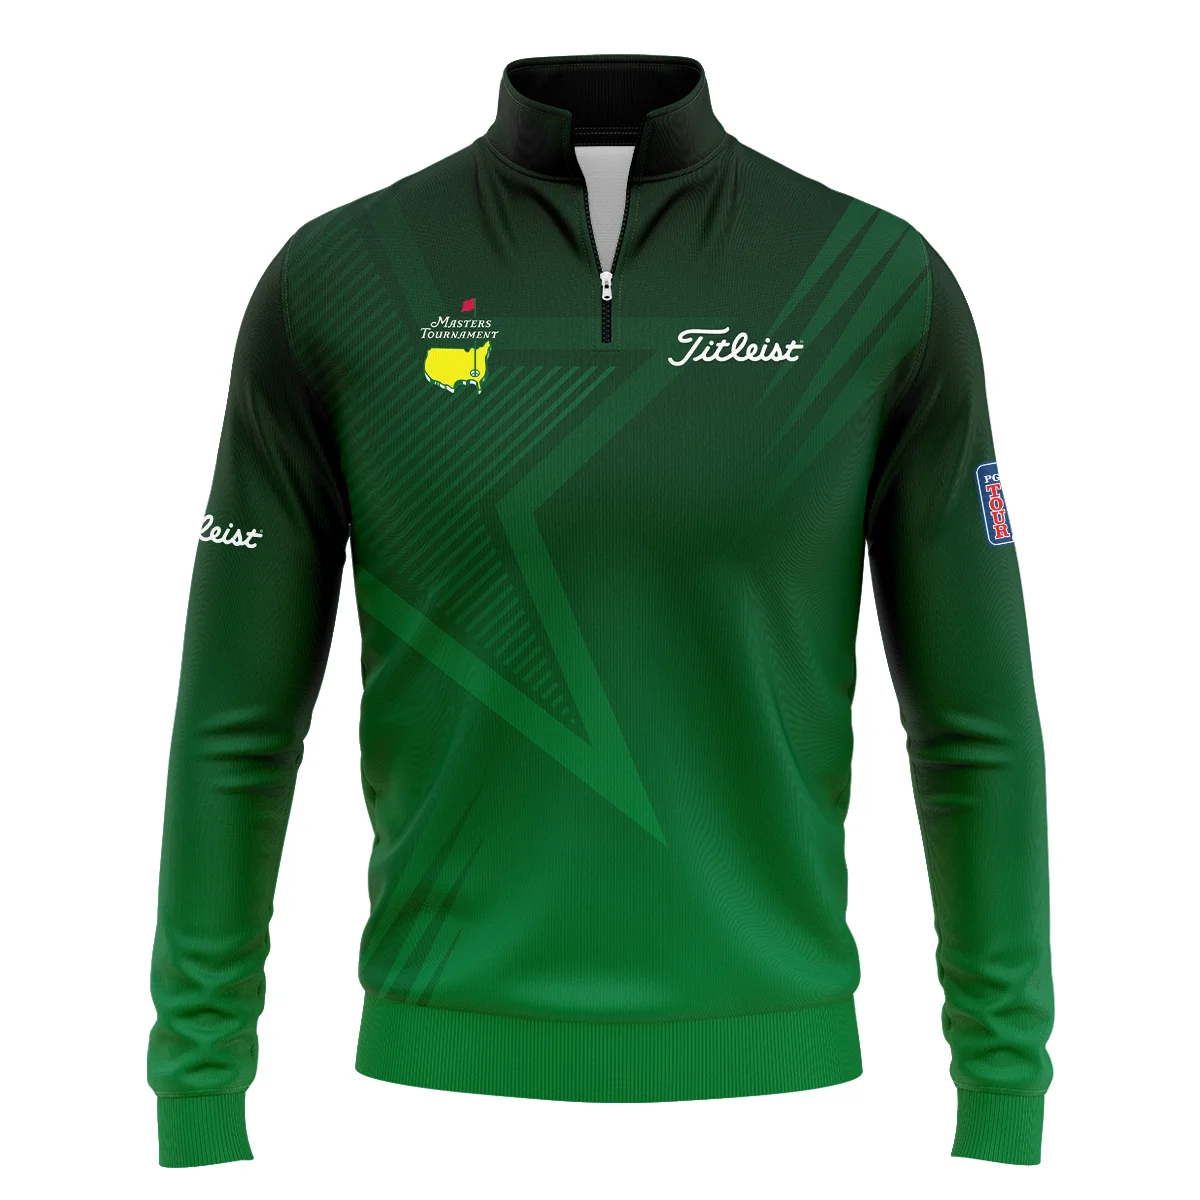 Titleist Masters Tournament Zipper Hoodie Shirt Dark Green Gradient Star Pattern Golf Sports Zipper Hoodie Shirt